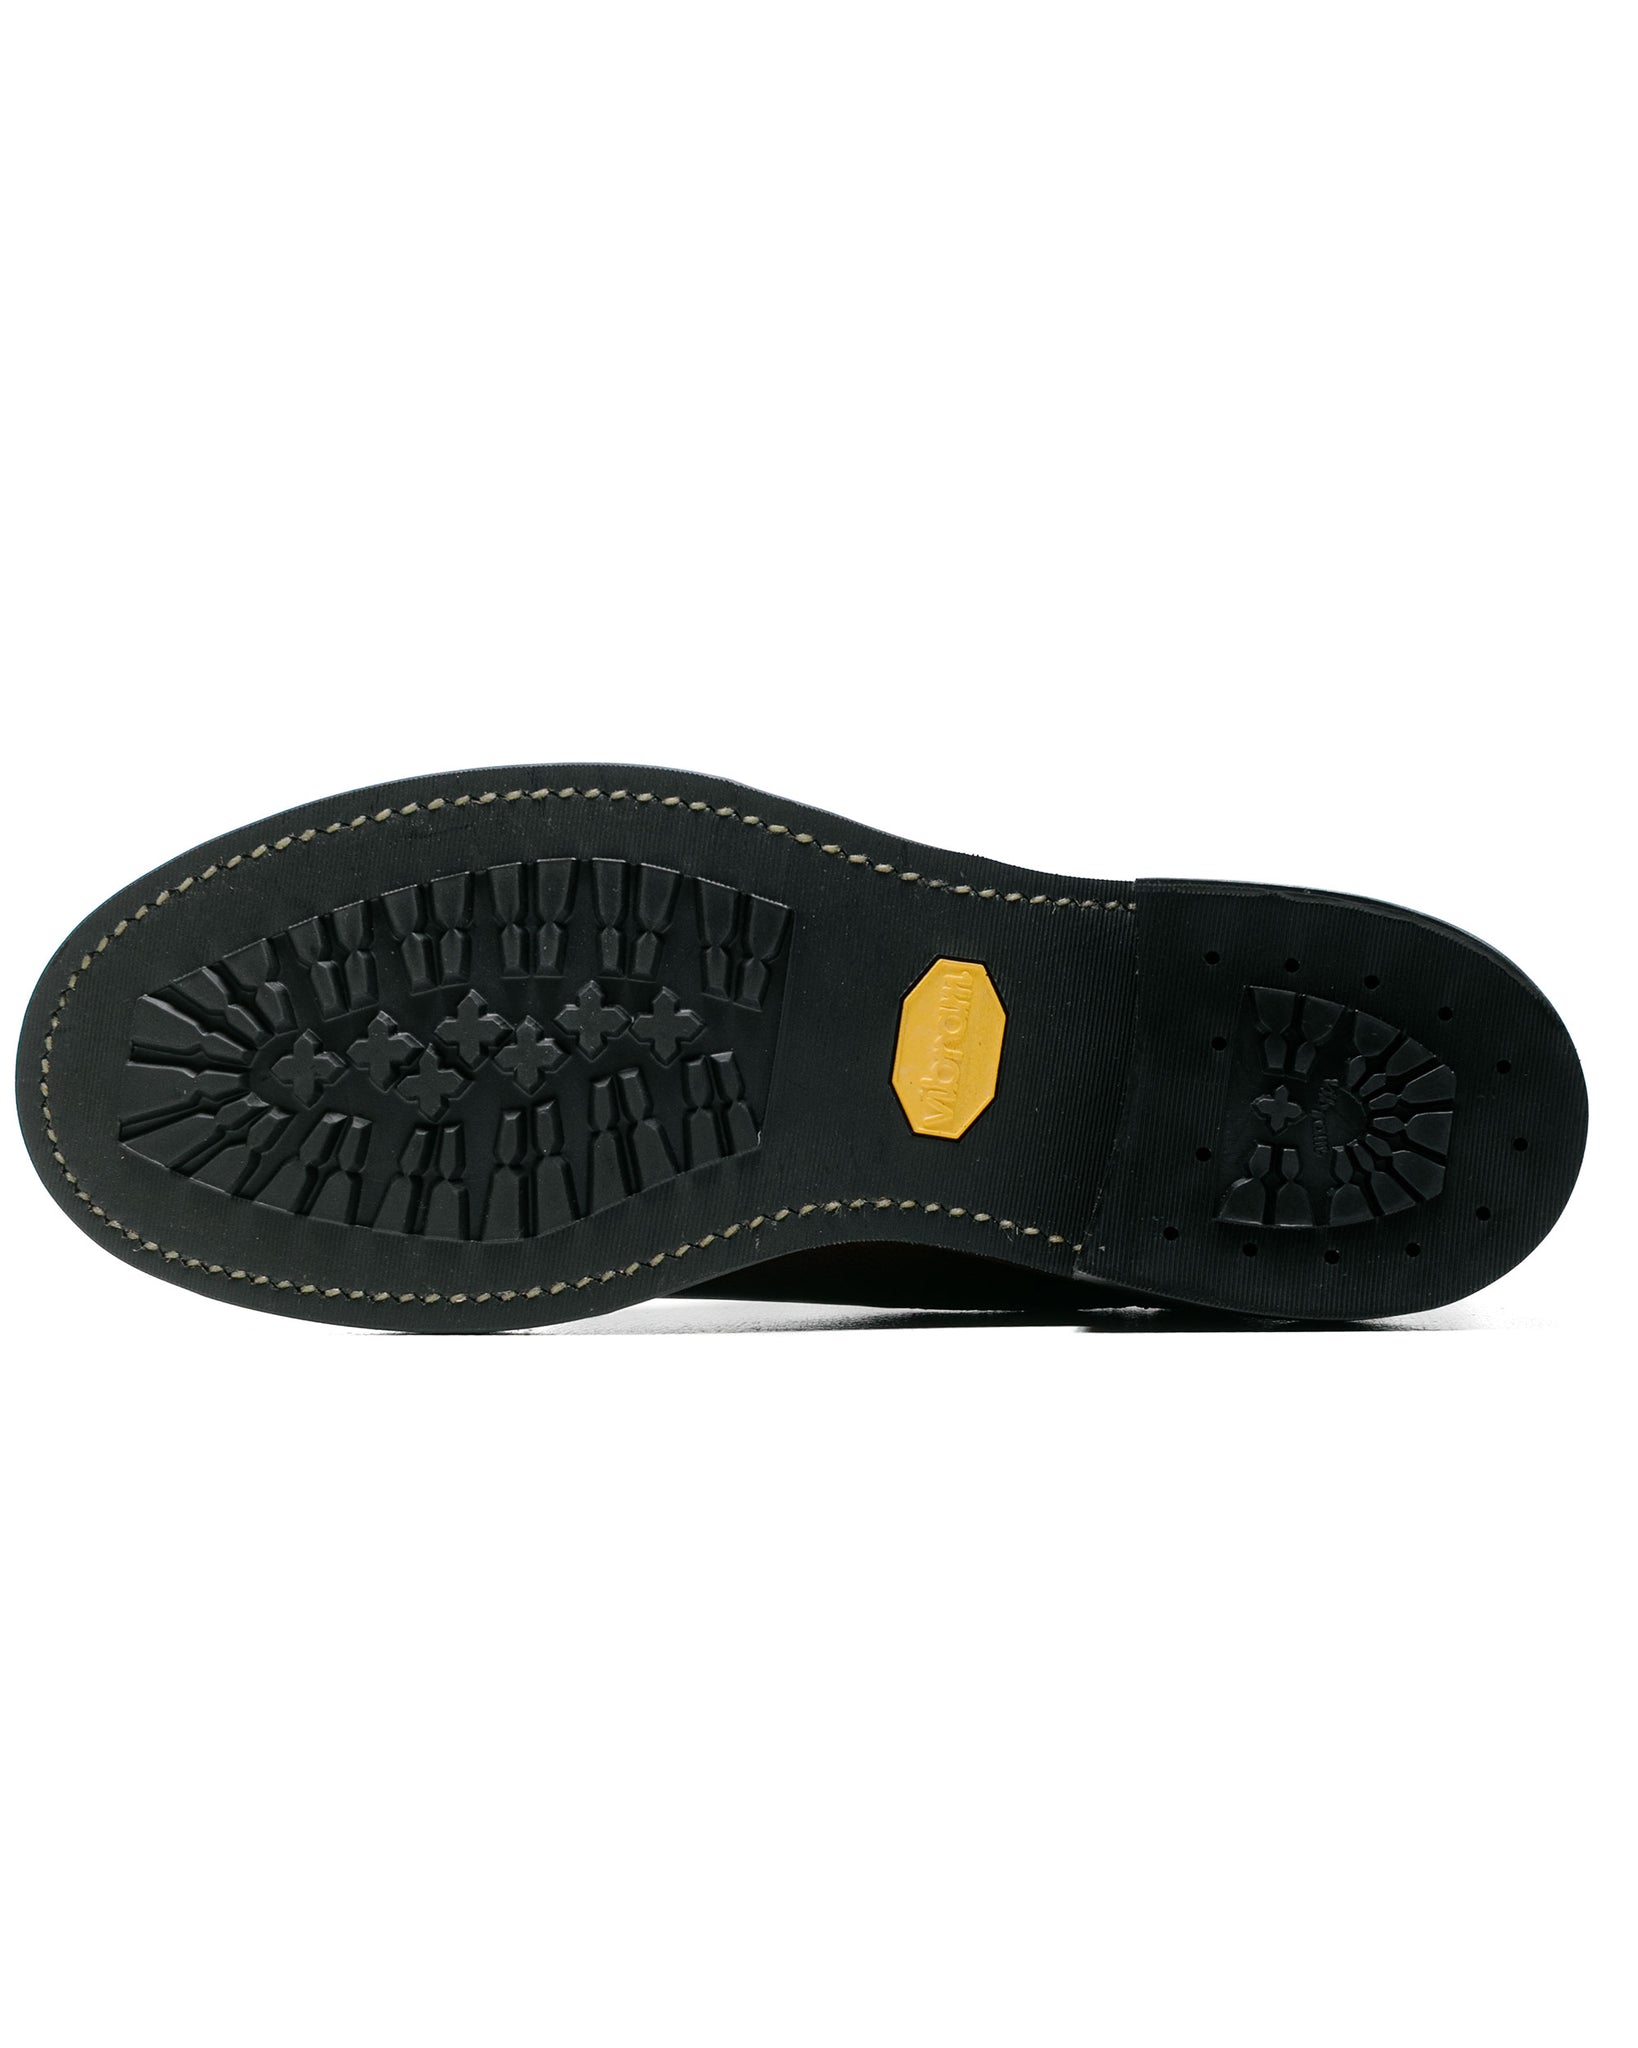 John Lofgren Bootmaker Chelsea Boots Horween CXL Dark Olive sole